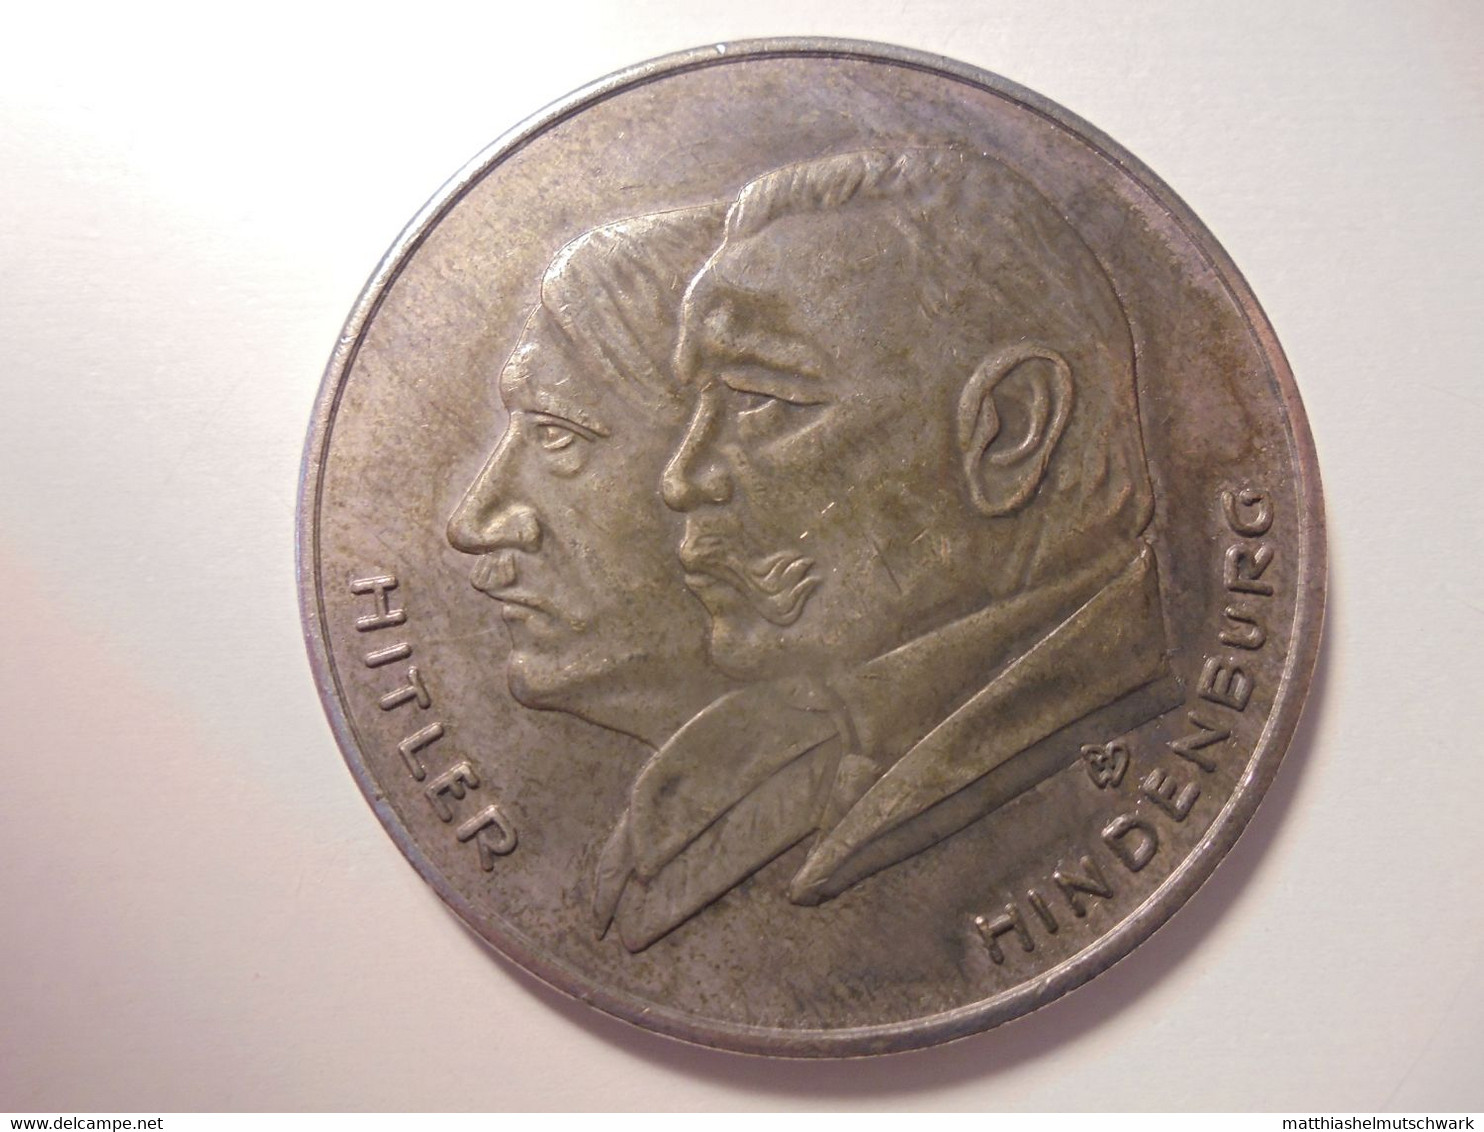 Medaille Auf „Deutschlands Erhebung 1933“ - Sehr Schöne Portraits Von Hitler Und Hindenburg Graveur/Designer: RW Medaill - Duitsland